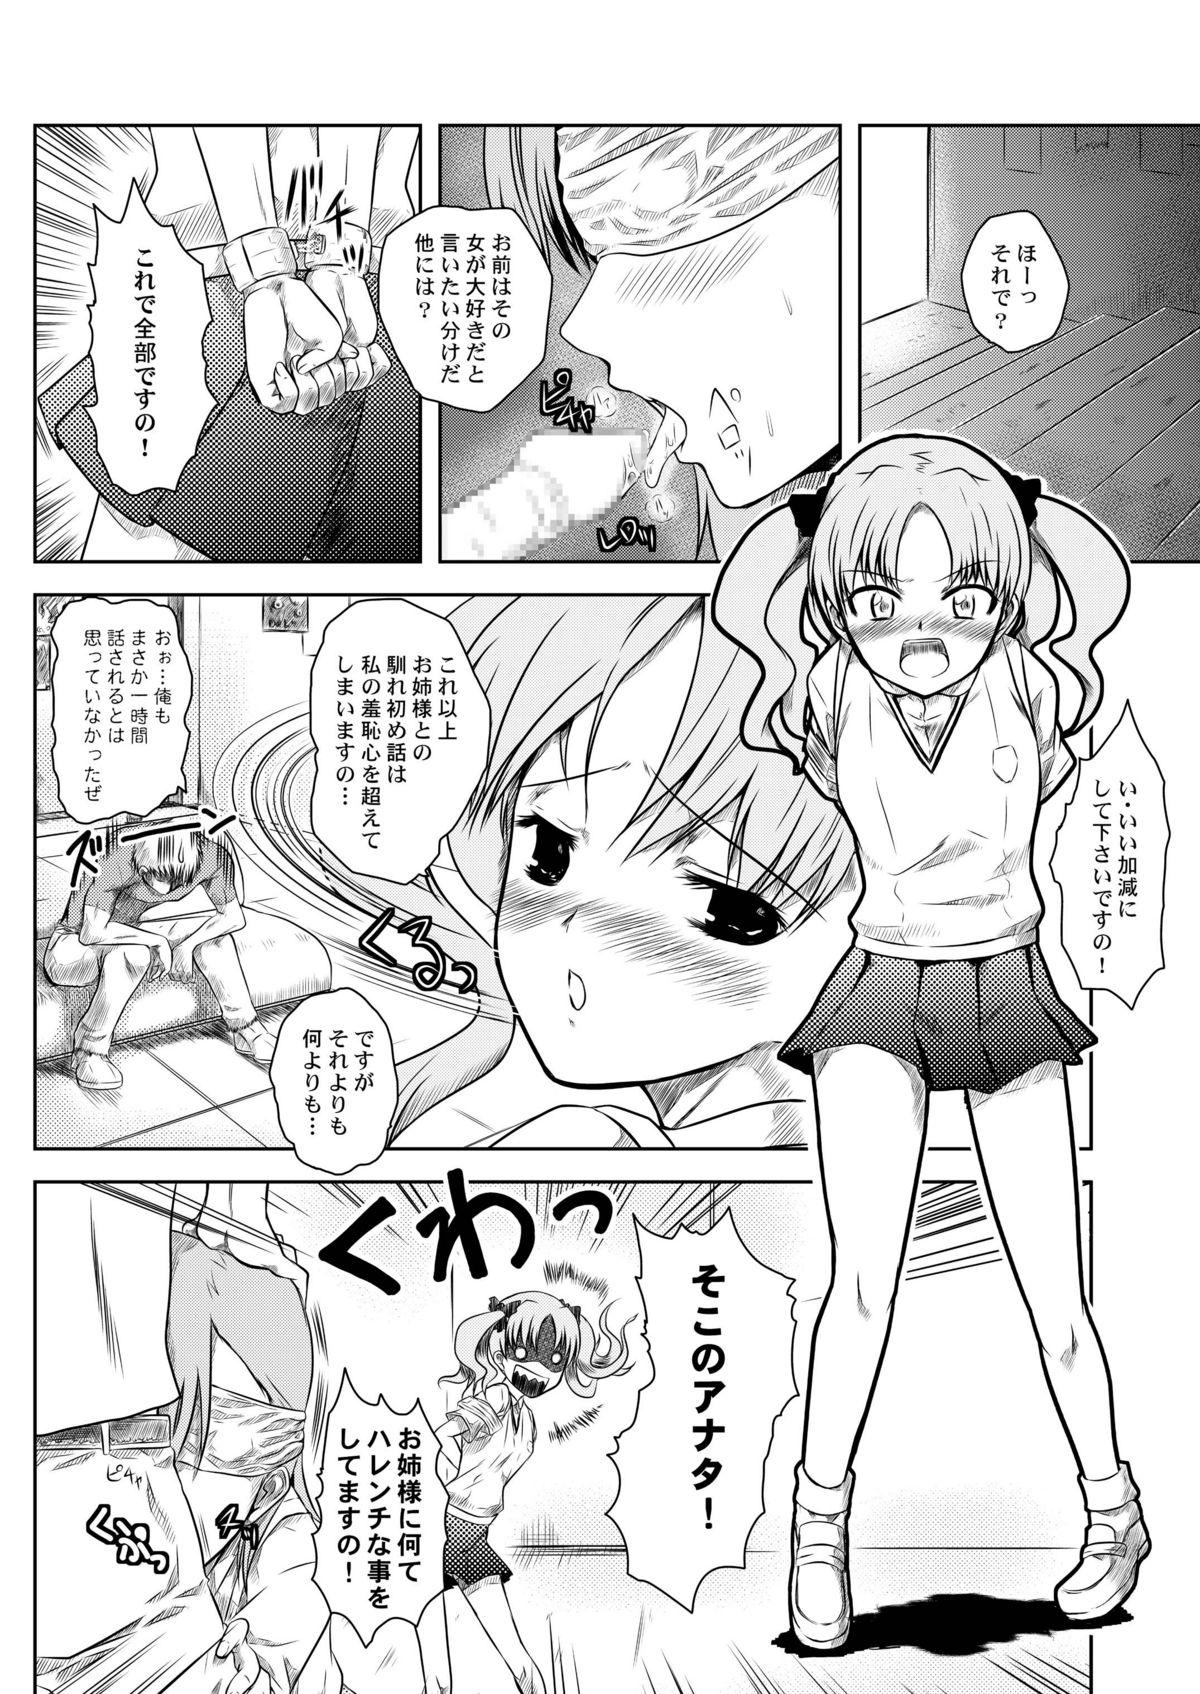 Lima Toaru Tokumei Kibou ni Goyoujin - Toaru kagaku no railgun Threesome - Page 7